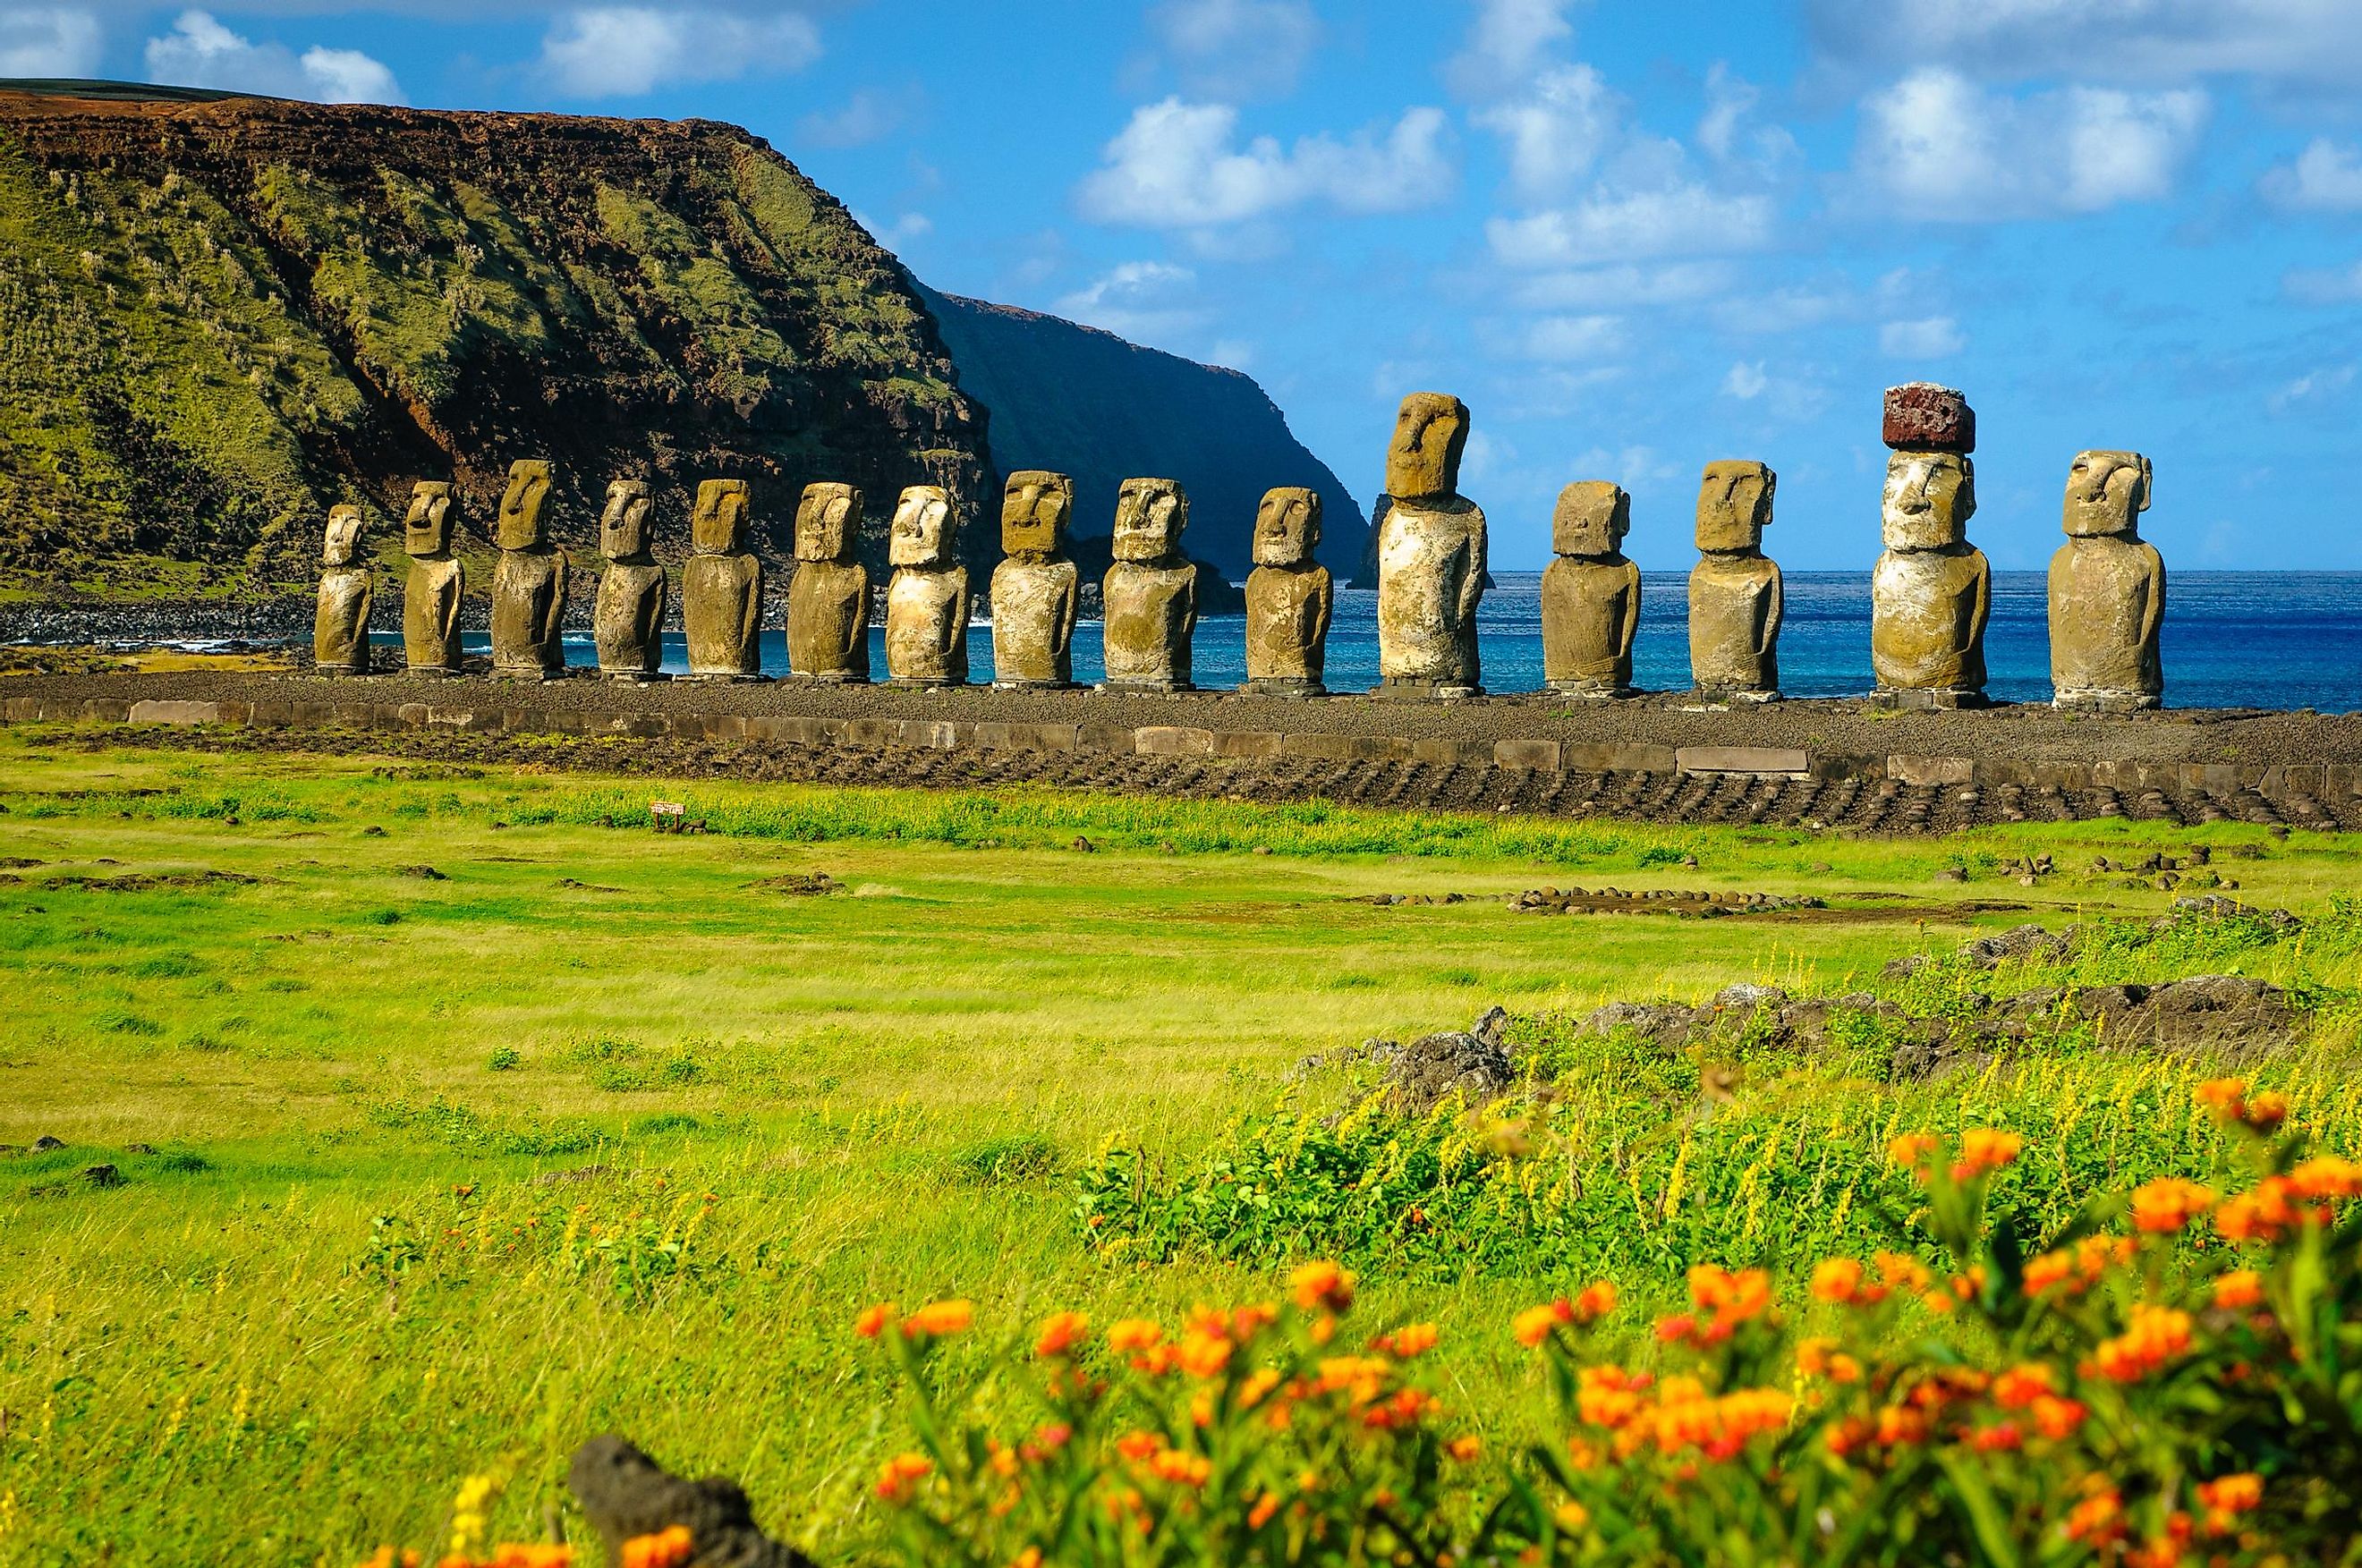 Moai statues on Easter Island, Chile.